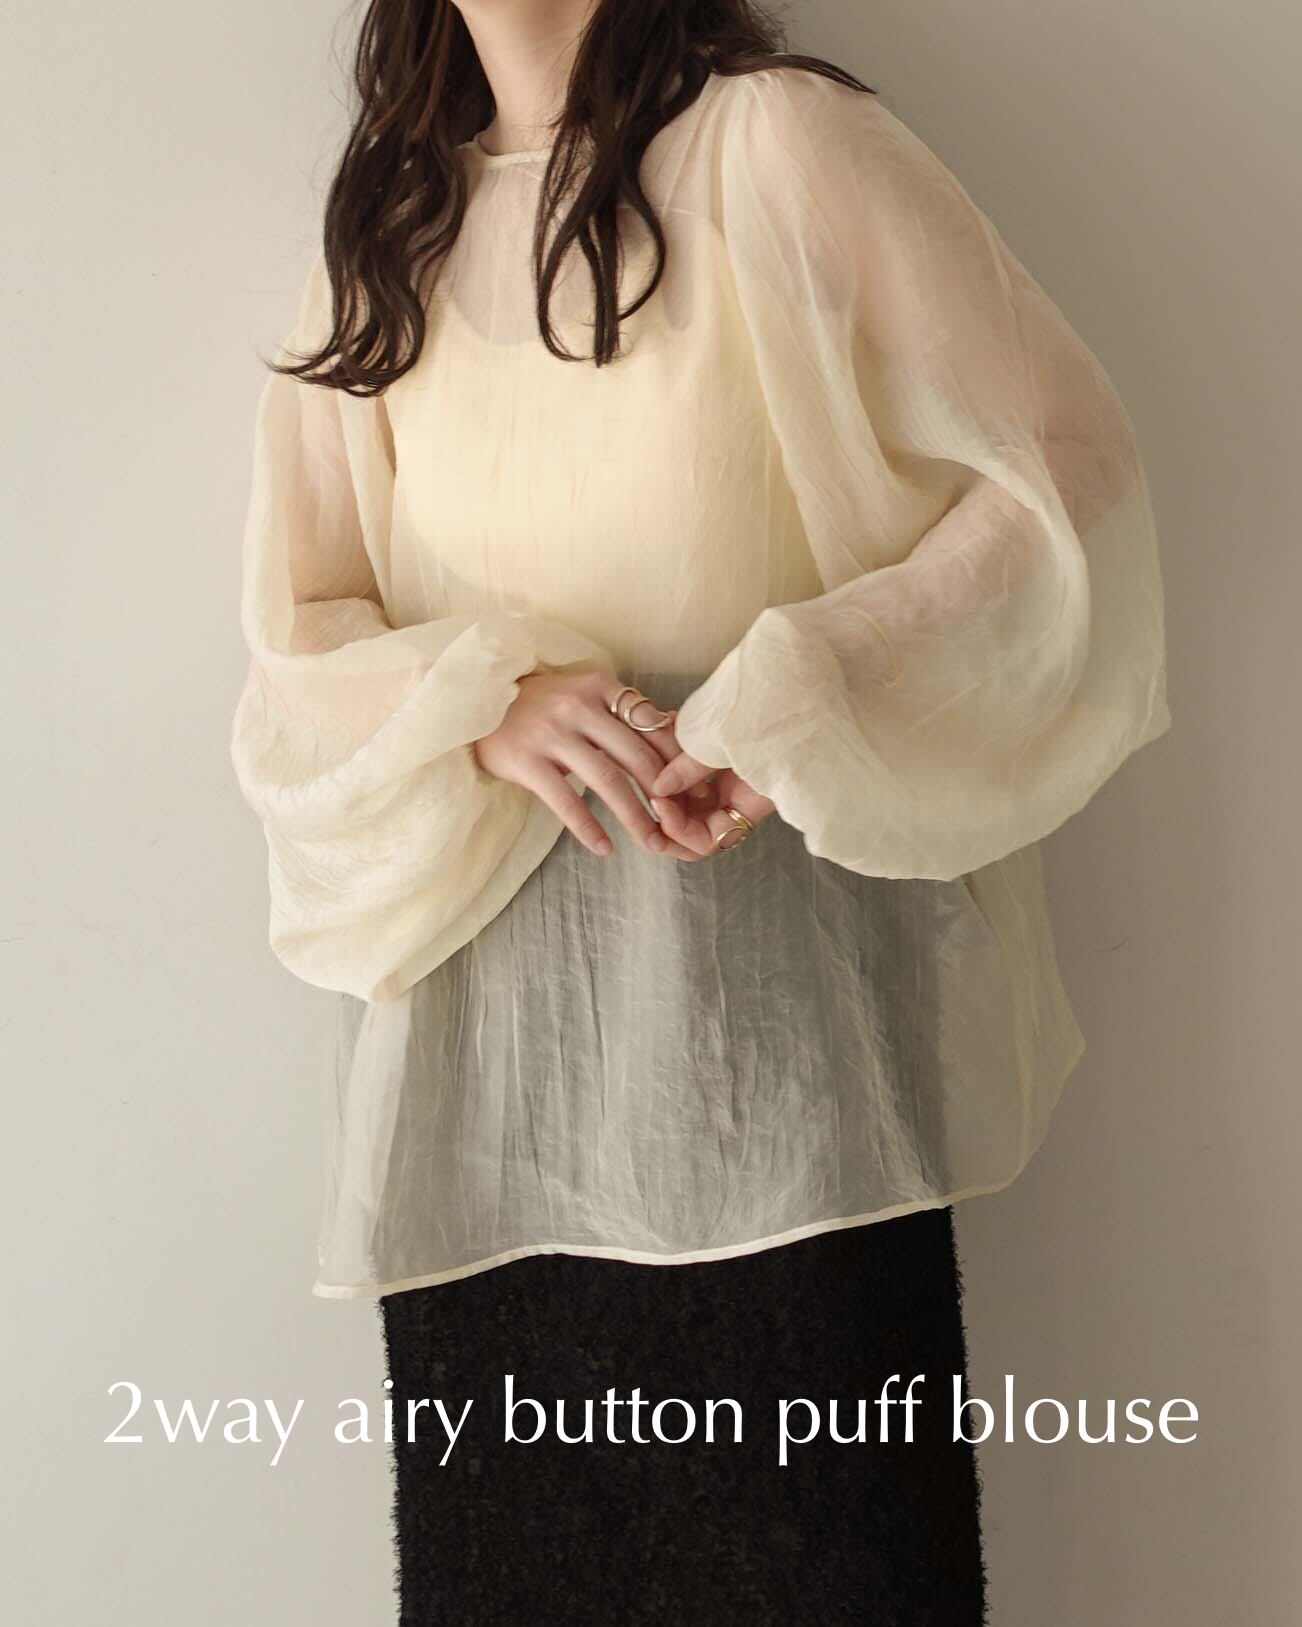 Alumu 2way airy button puff blouse アイボリー